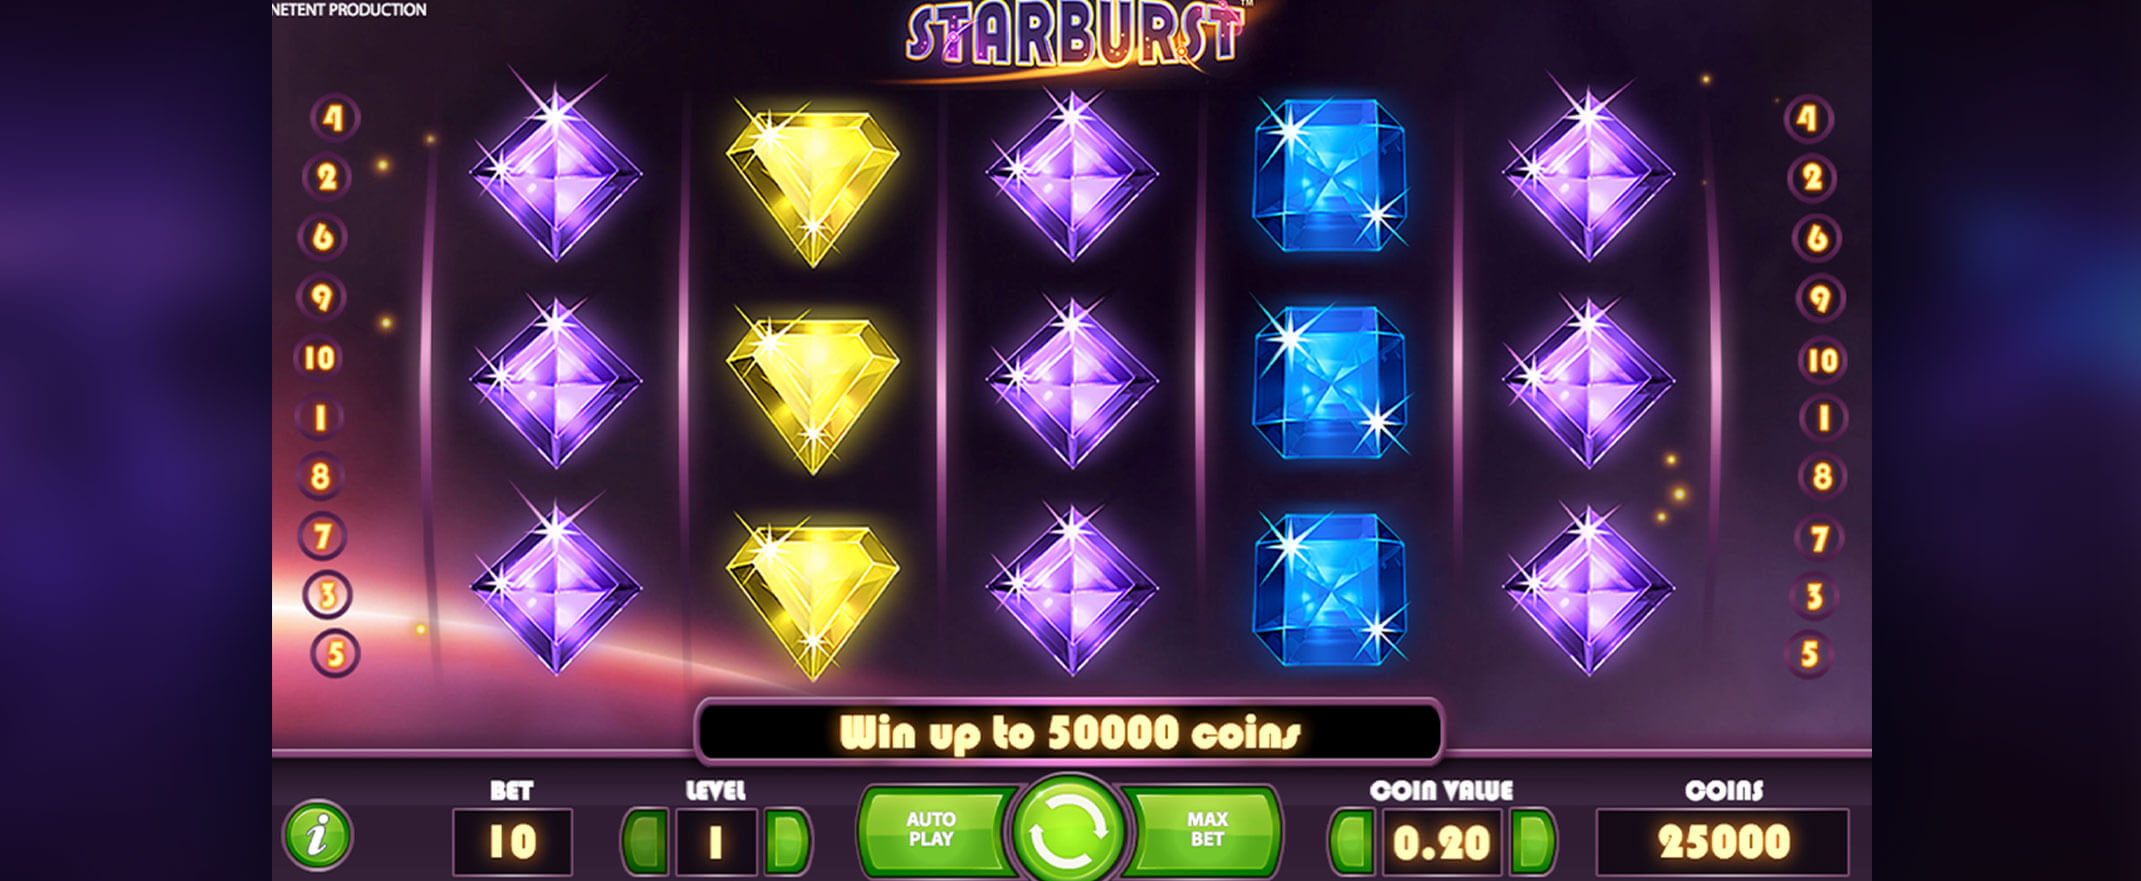 Starburst Spielautomat von NetEnt